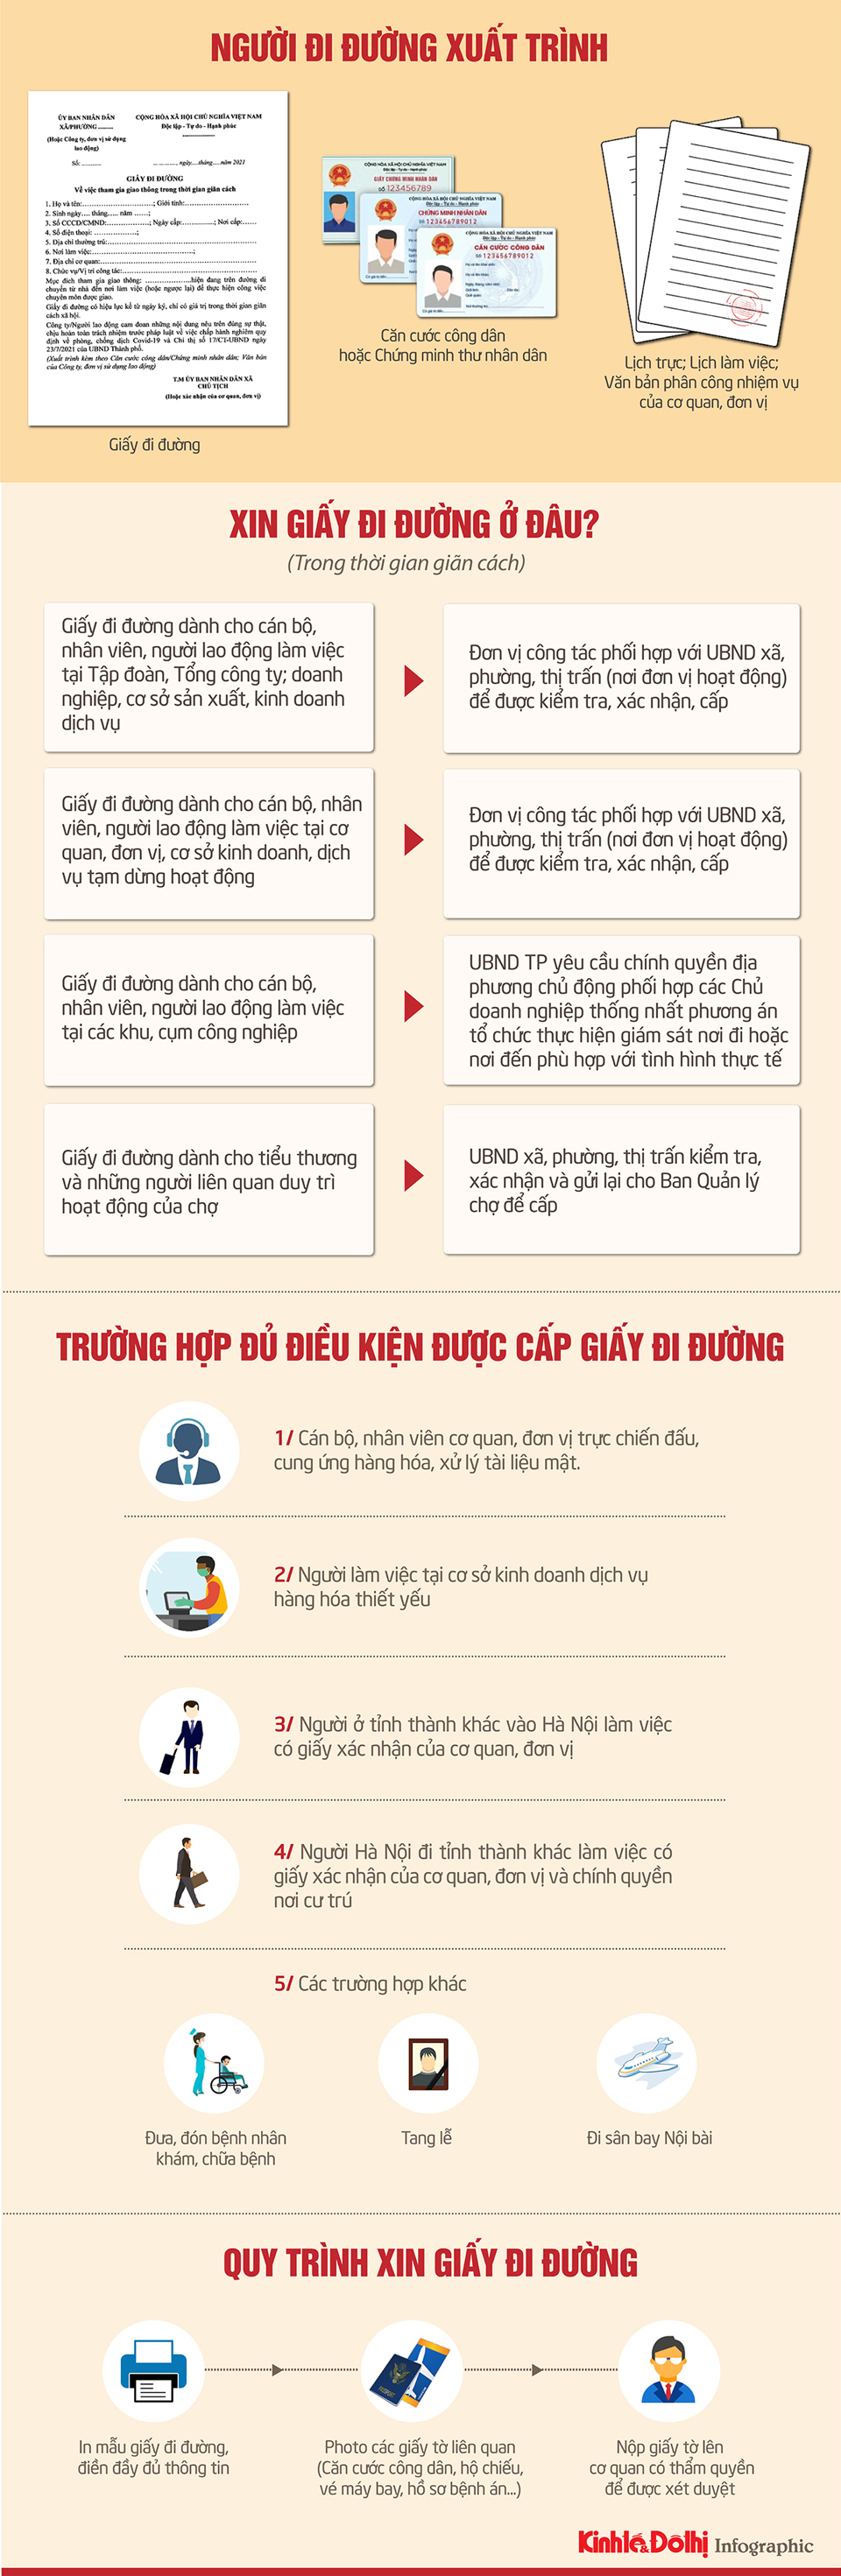 [Infographic] Quy định mới nhất về các loại giấy tờ người đi đường ở Hà Nội cần mang theo - Ảnh 1